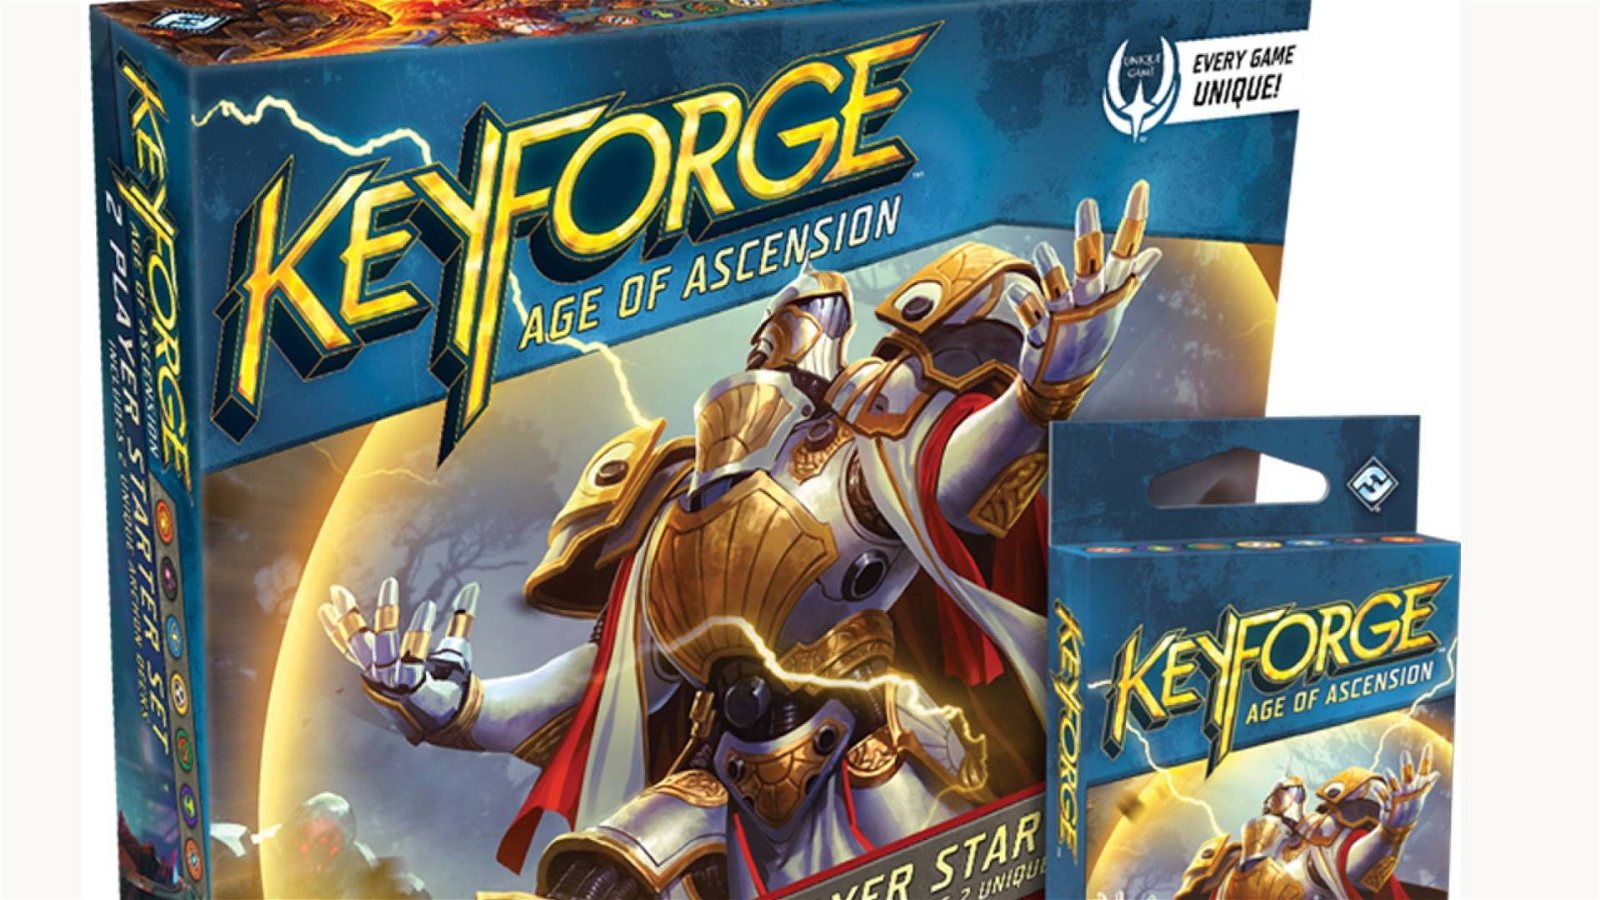 Immagine di KeyForge: Age of Ascension, annunciata la seconda serie di mazzi KeyForge.